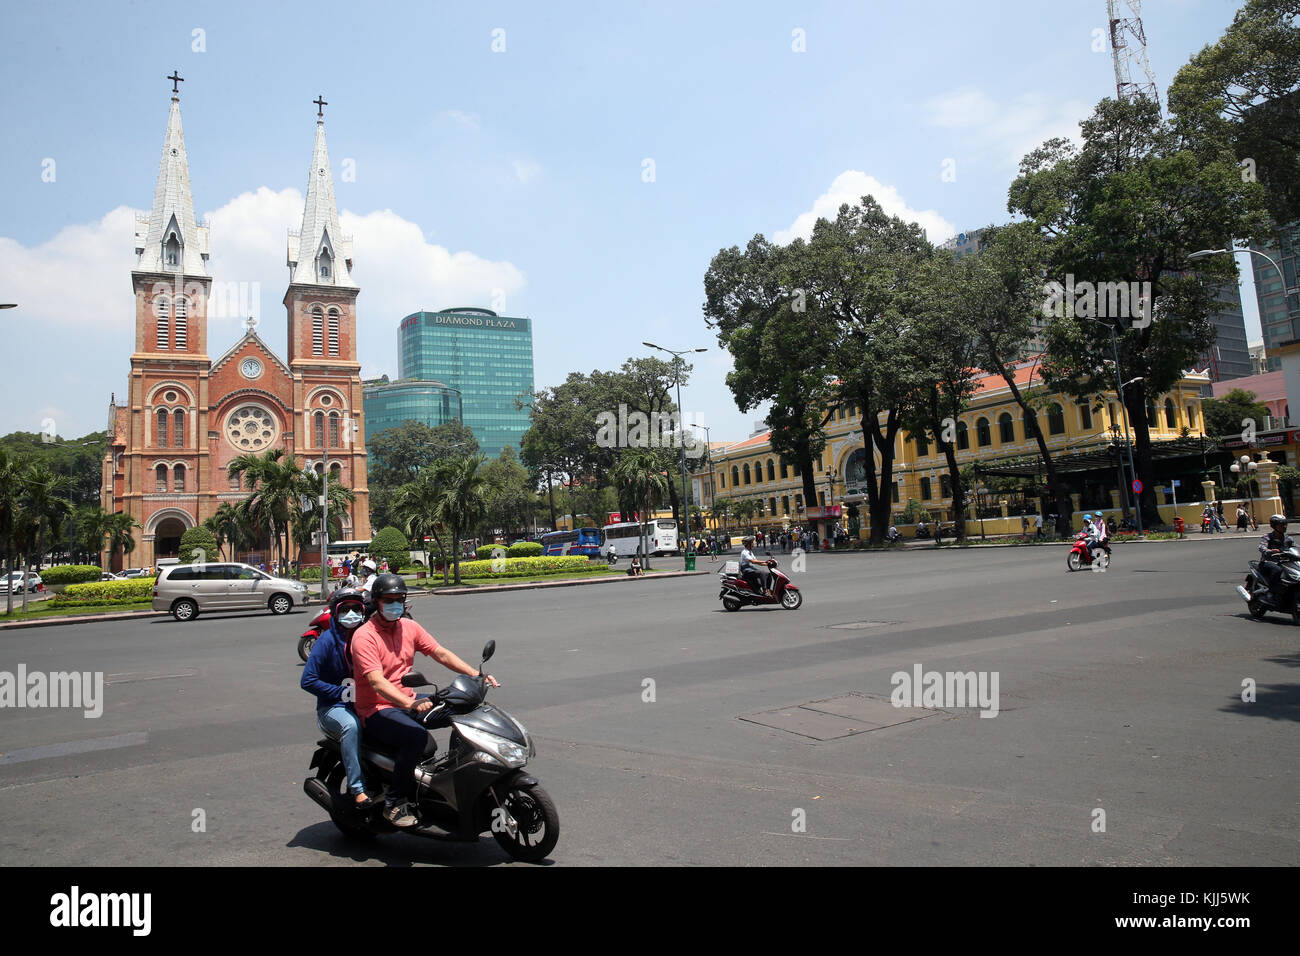 La cathédrale Notre Dame, La Poste et Diamond Plaza. Le district de Dong Khoi. Ho Chi Minh Ville. Le Vietnam. Banque D'Images